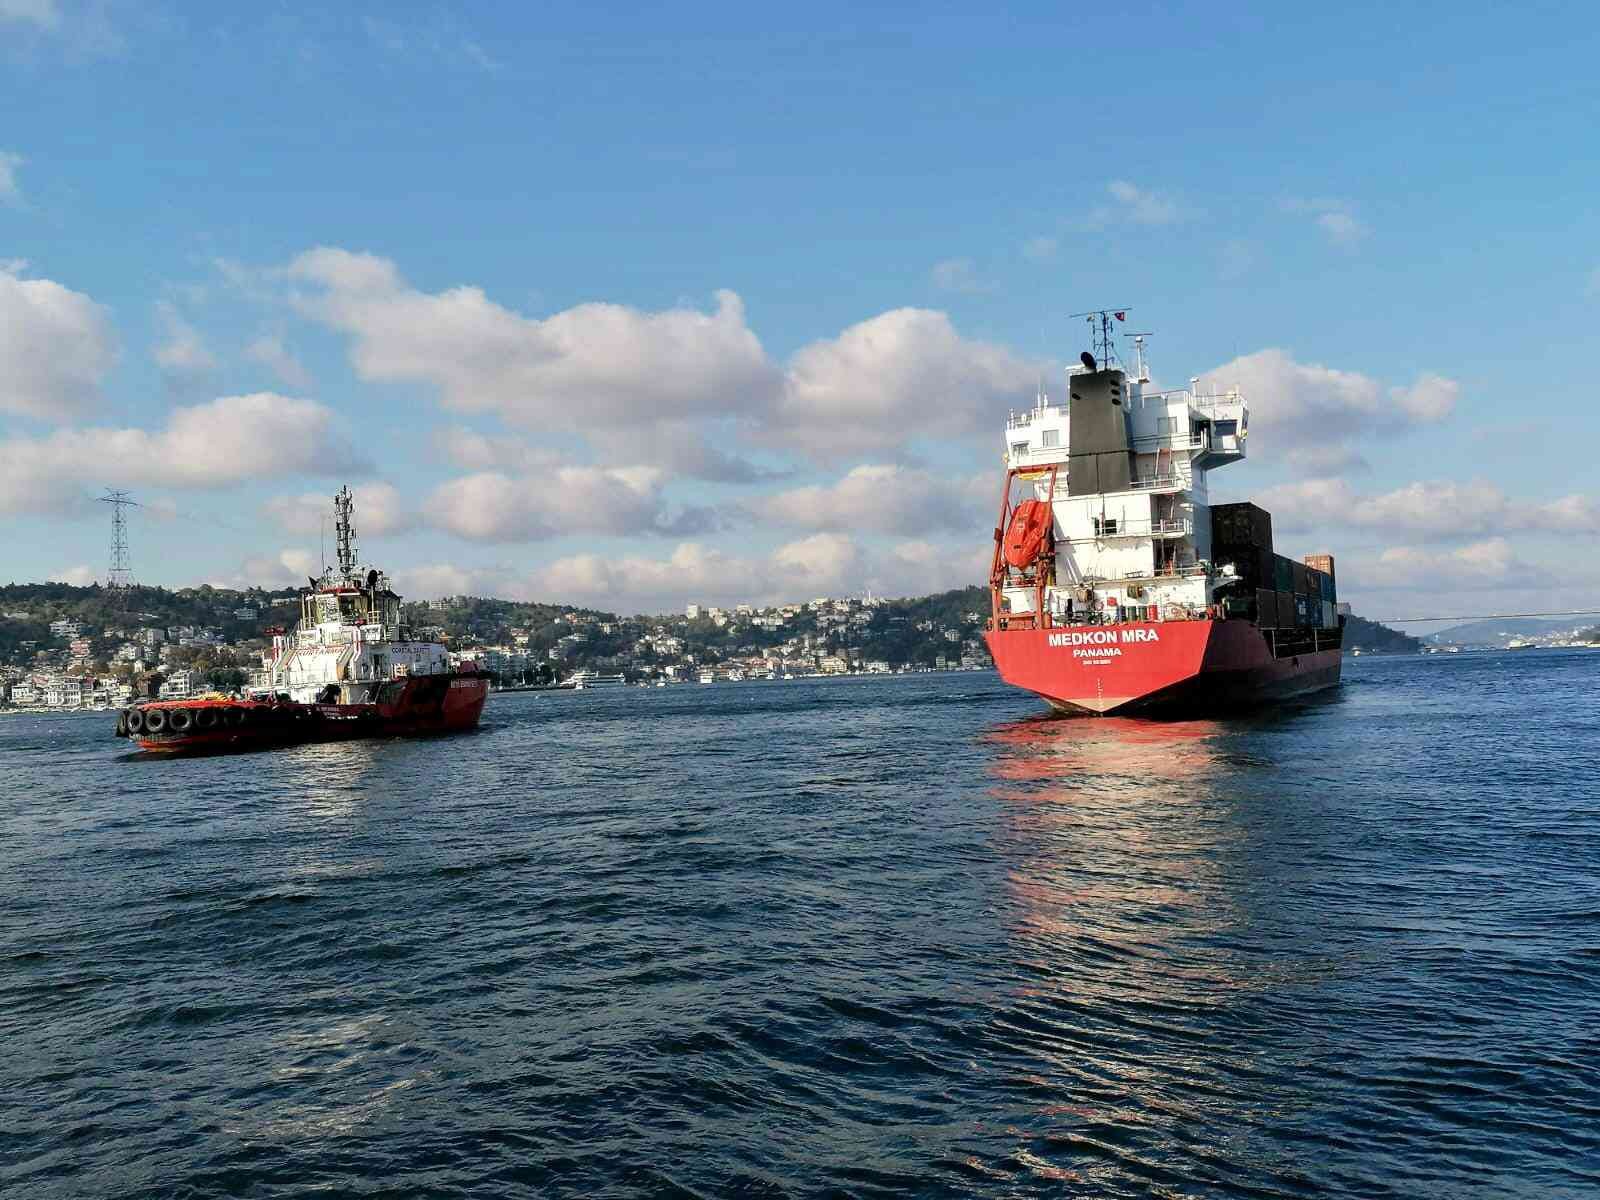 İstanbul Boğazında Üsküdar açıklarında ilerleyen 102 metre boyunda bir kargo gemisi makine arızası nedeniyle denizde sürüklendi. Sürüklenen gemi kıyıya metreler kala durabildi. #istanbul